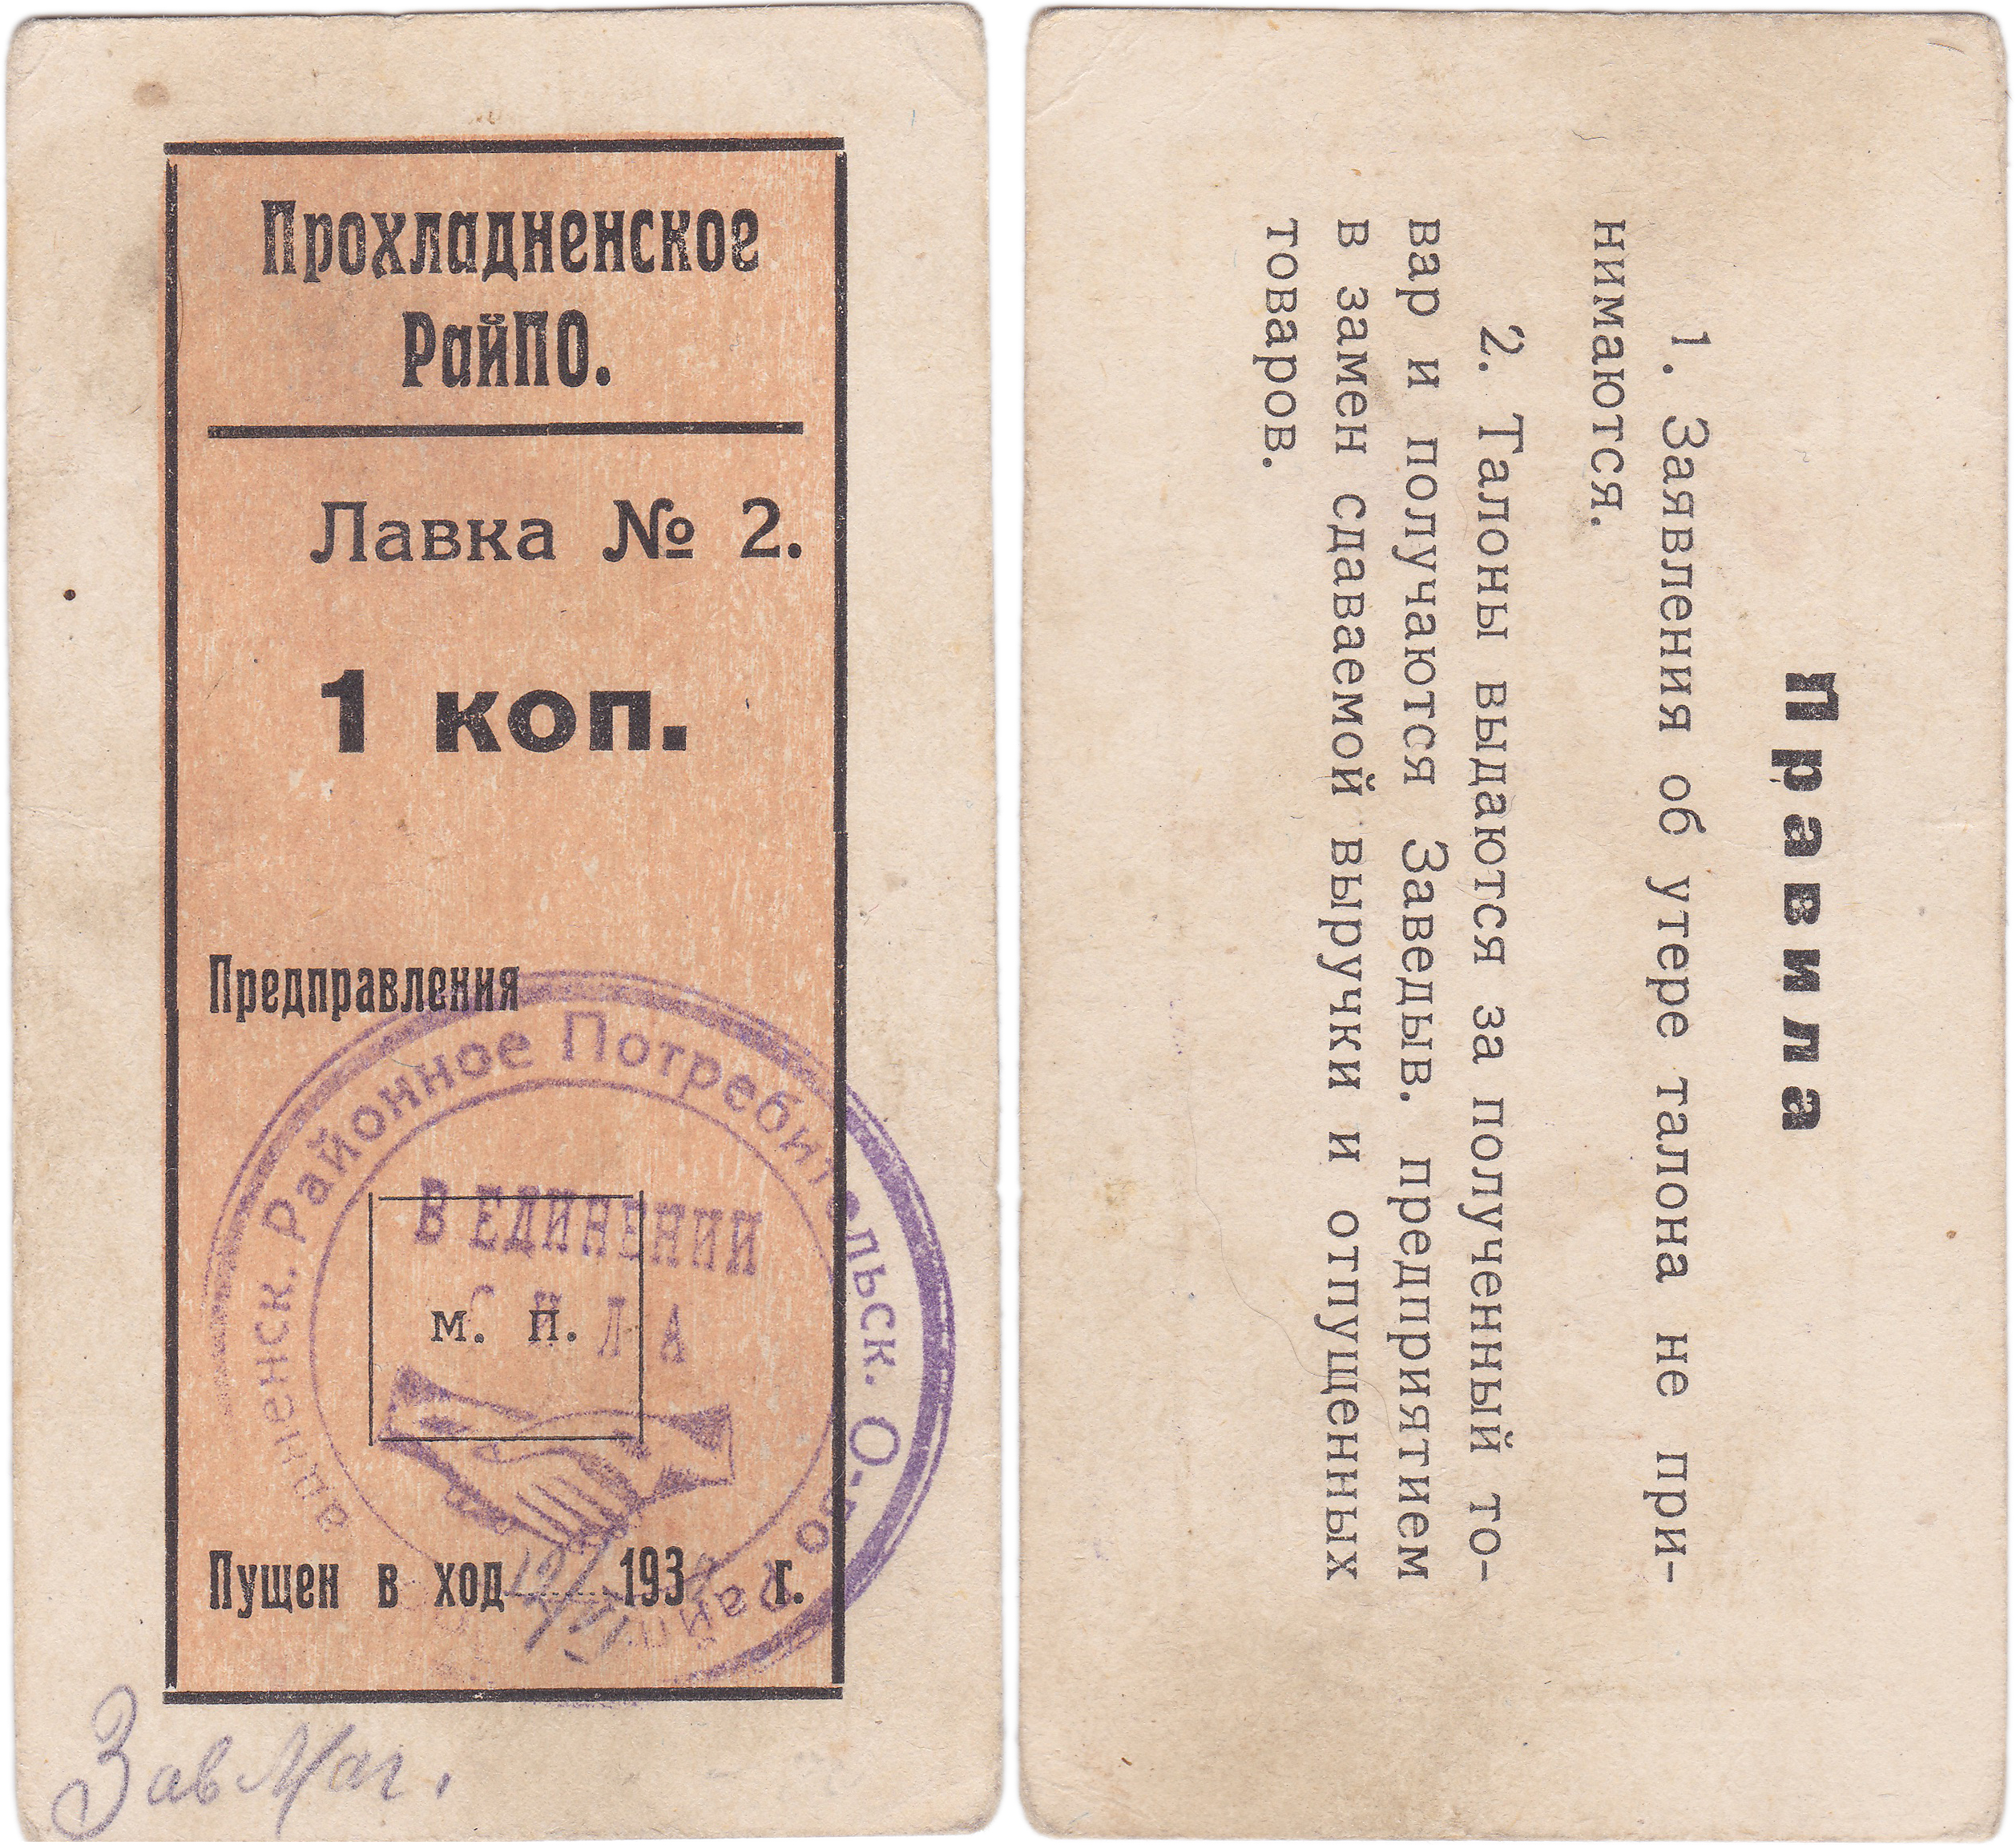 1 Копейка 1932 год. Лавка №2. Прохладненское Районное Потребительское Общество 